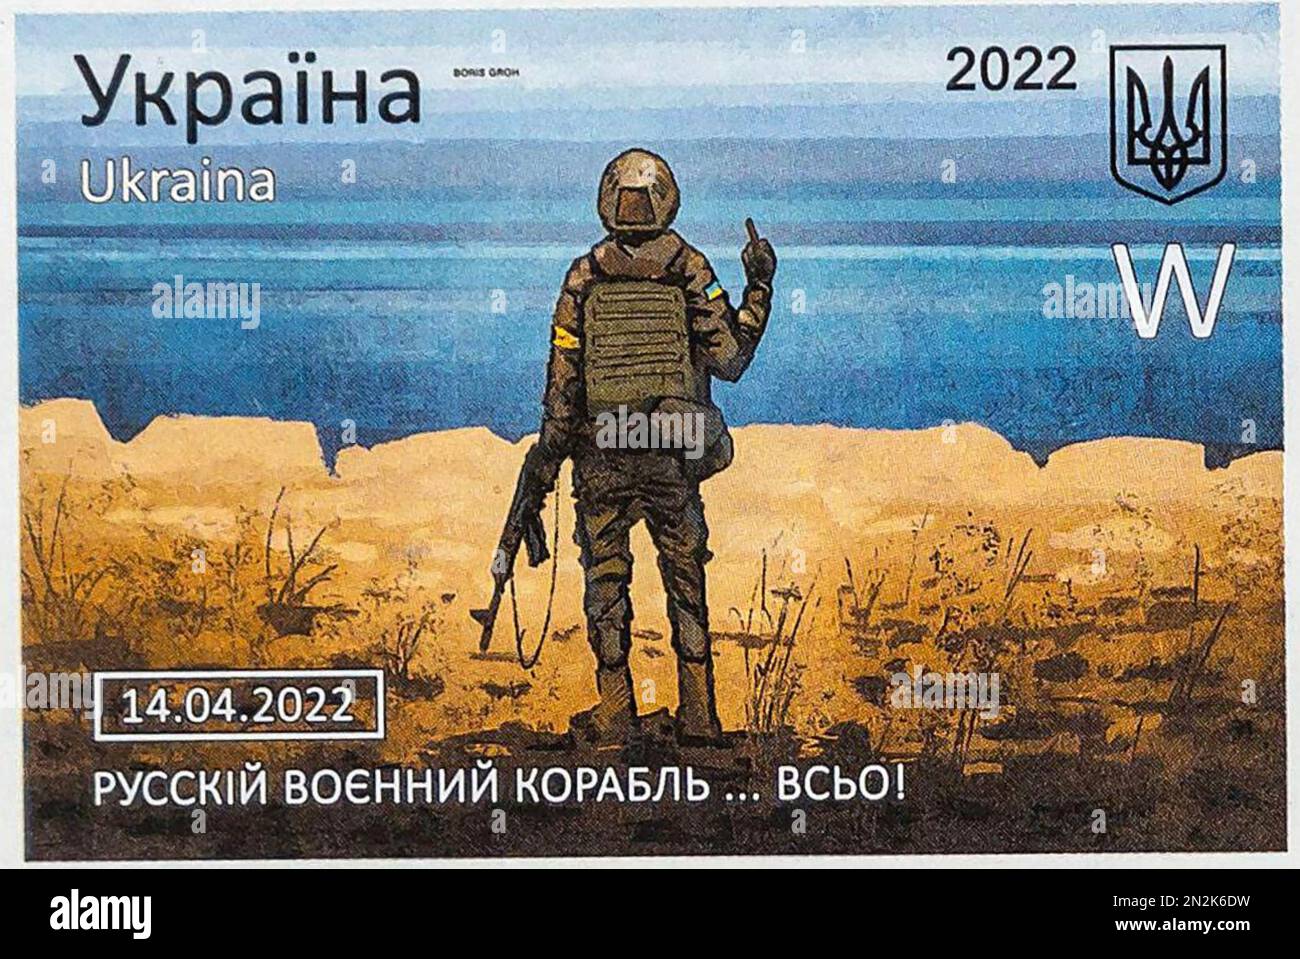 TIMBRE-poste ukrainien DE SNAKE ISLAND, émis en 2022, montrant un soldat ukrainien qui donne le doigt au croiseur russe Moskva . Le navire a coulé deux jours après l'émission du timbre. Banque D'Images